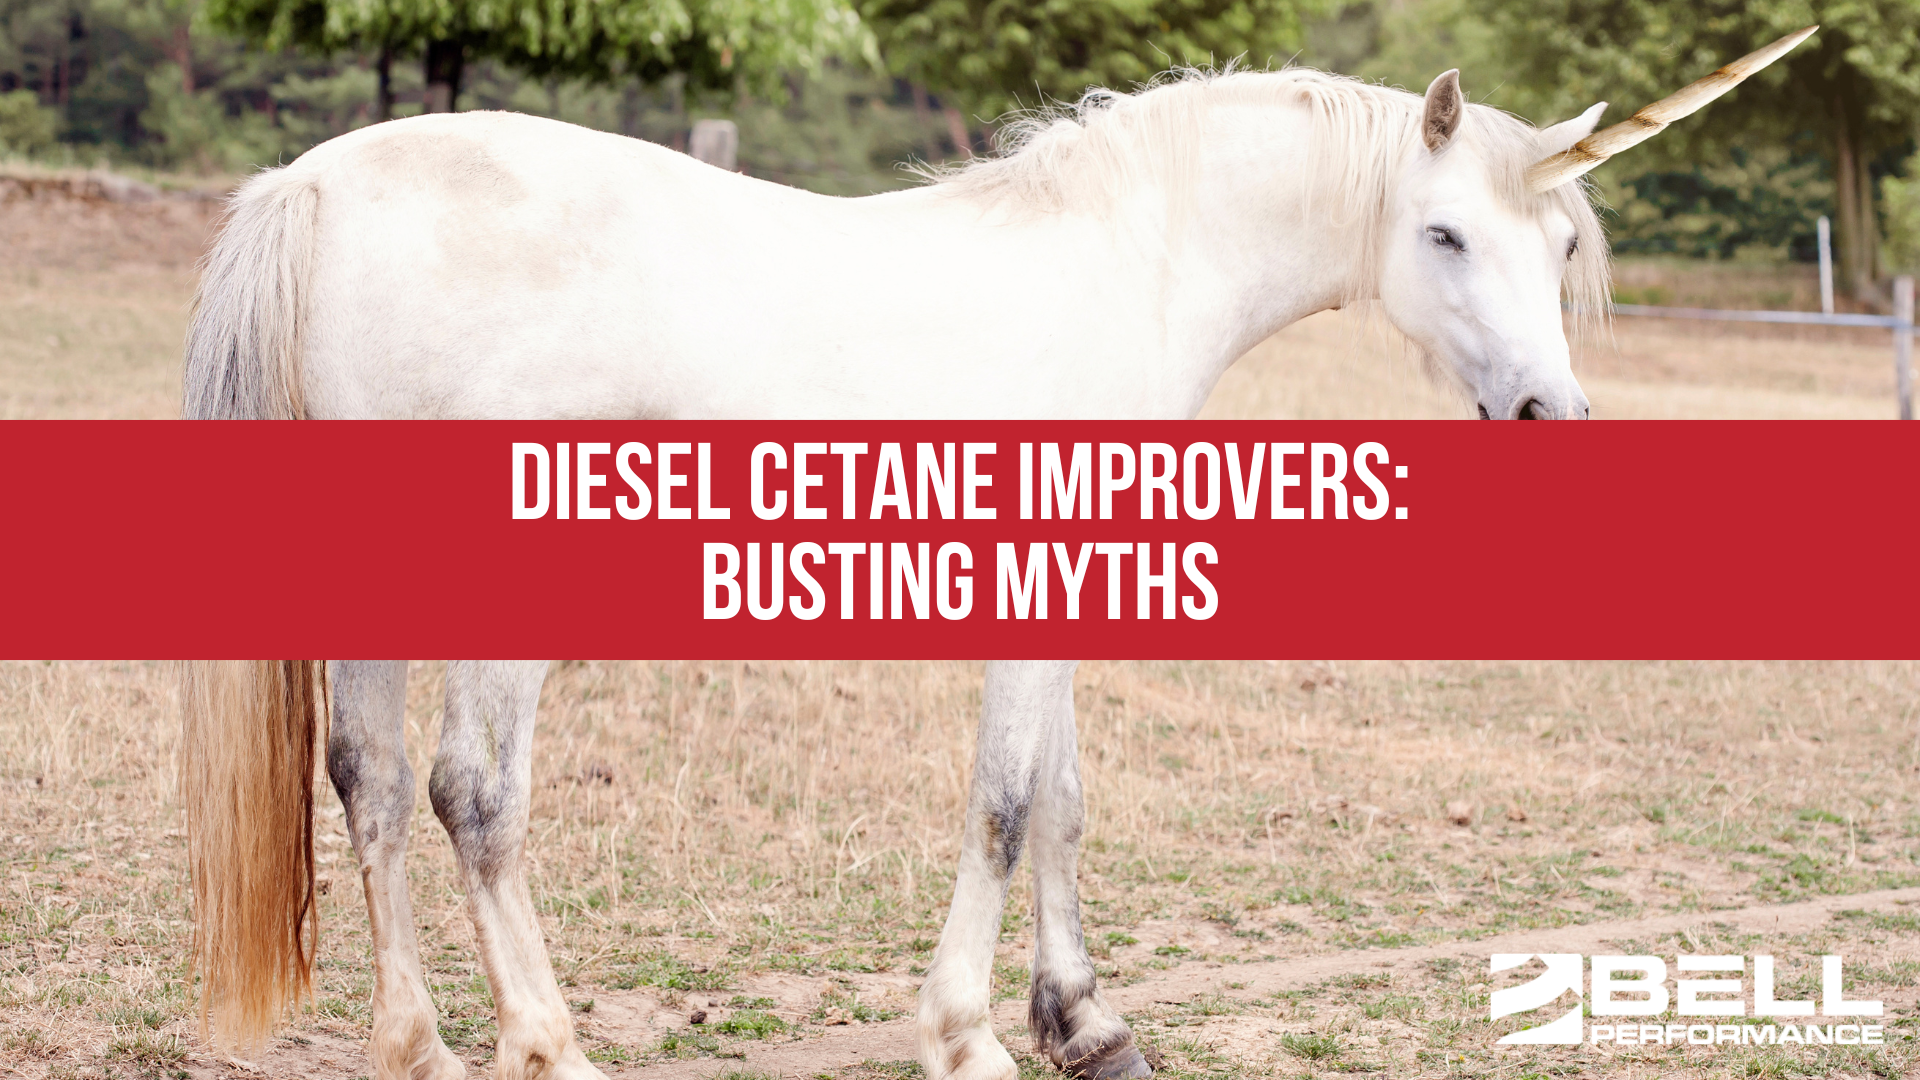 Diesel Cetane Improvers: Busting Myths